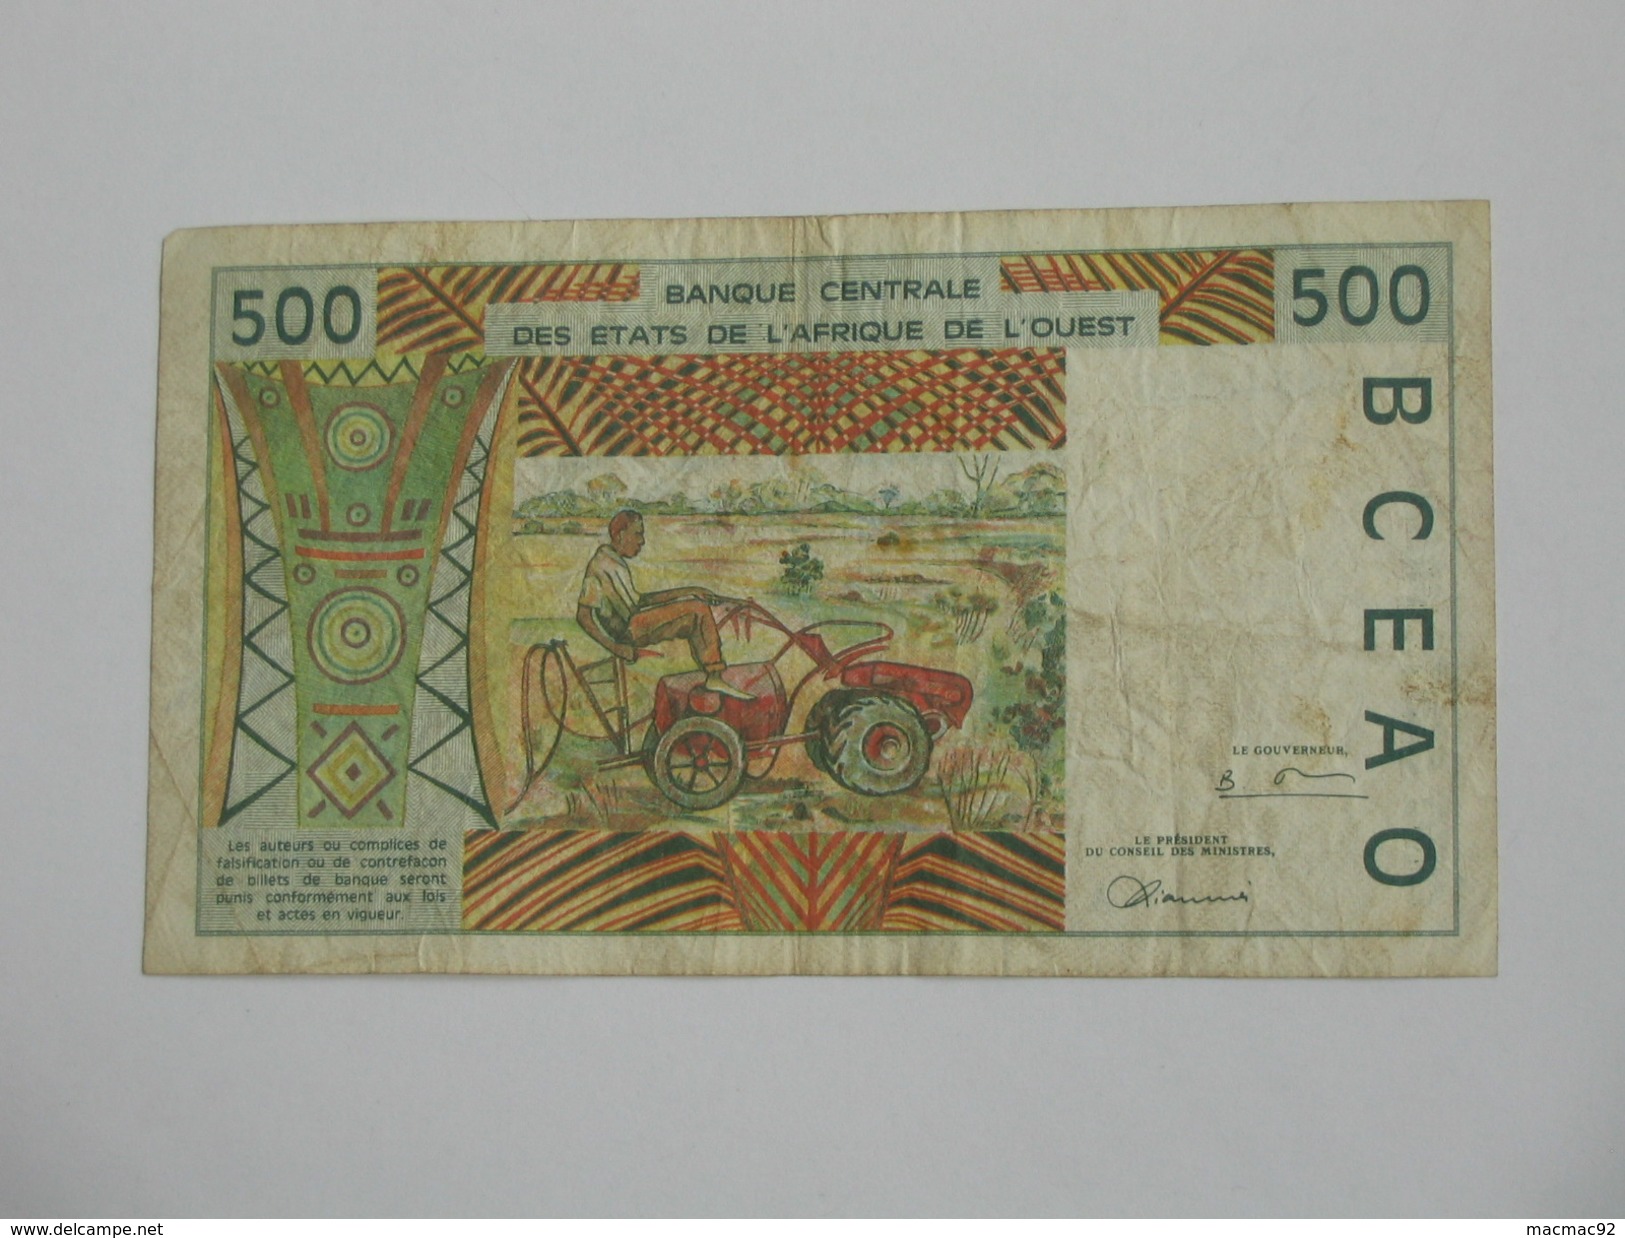 500 Cinq Cents Francs 1986- 1996 -  Banque Central Des états De L'Afrique De L'ouest  **** EN ACHAT IMMEDIAT **** - Costa D'Avorio